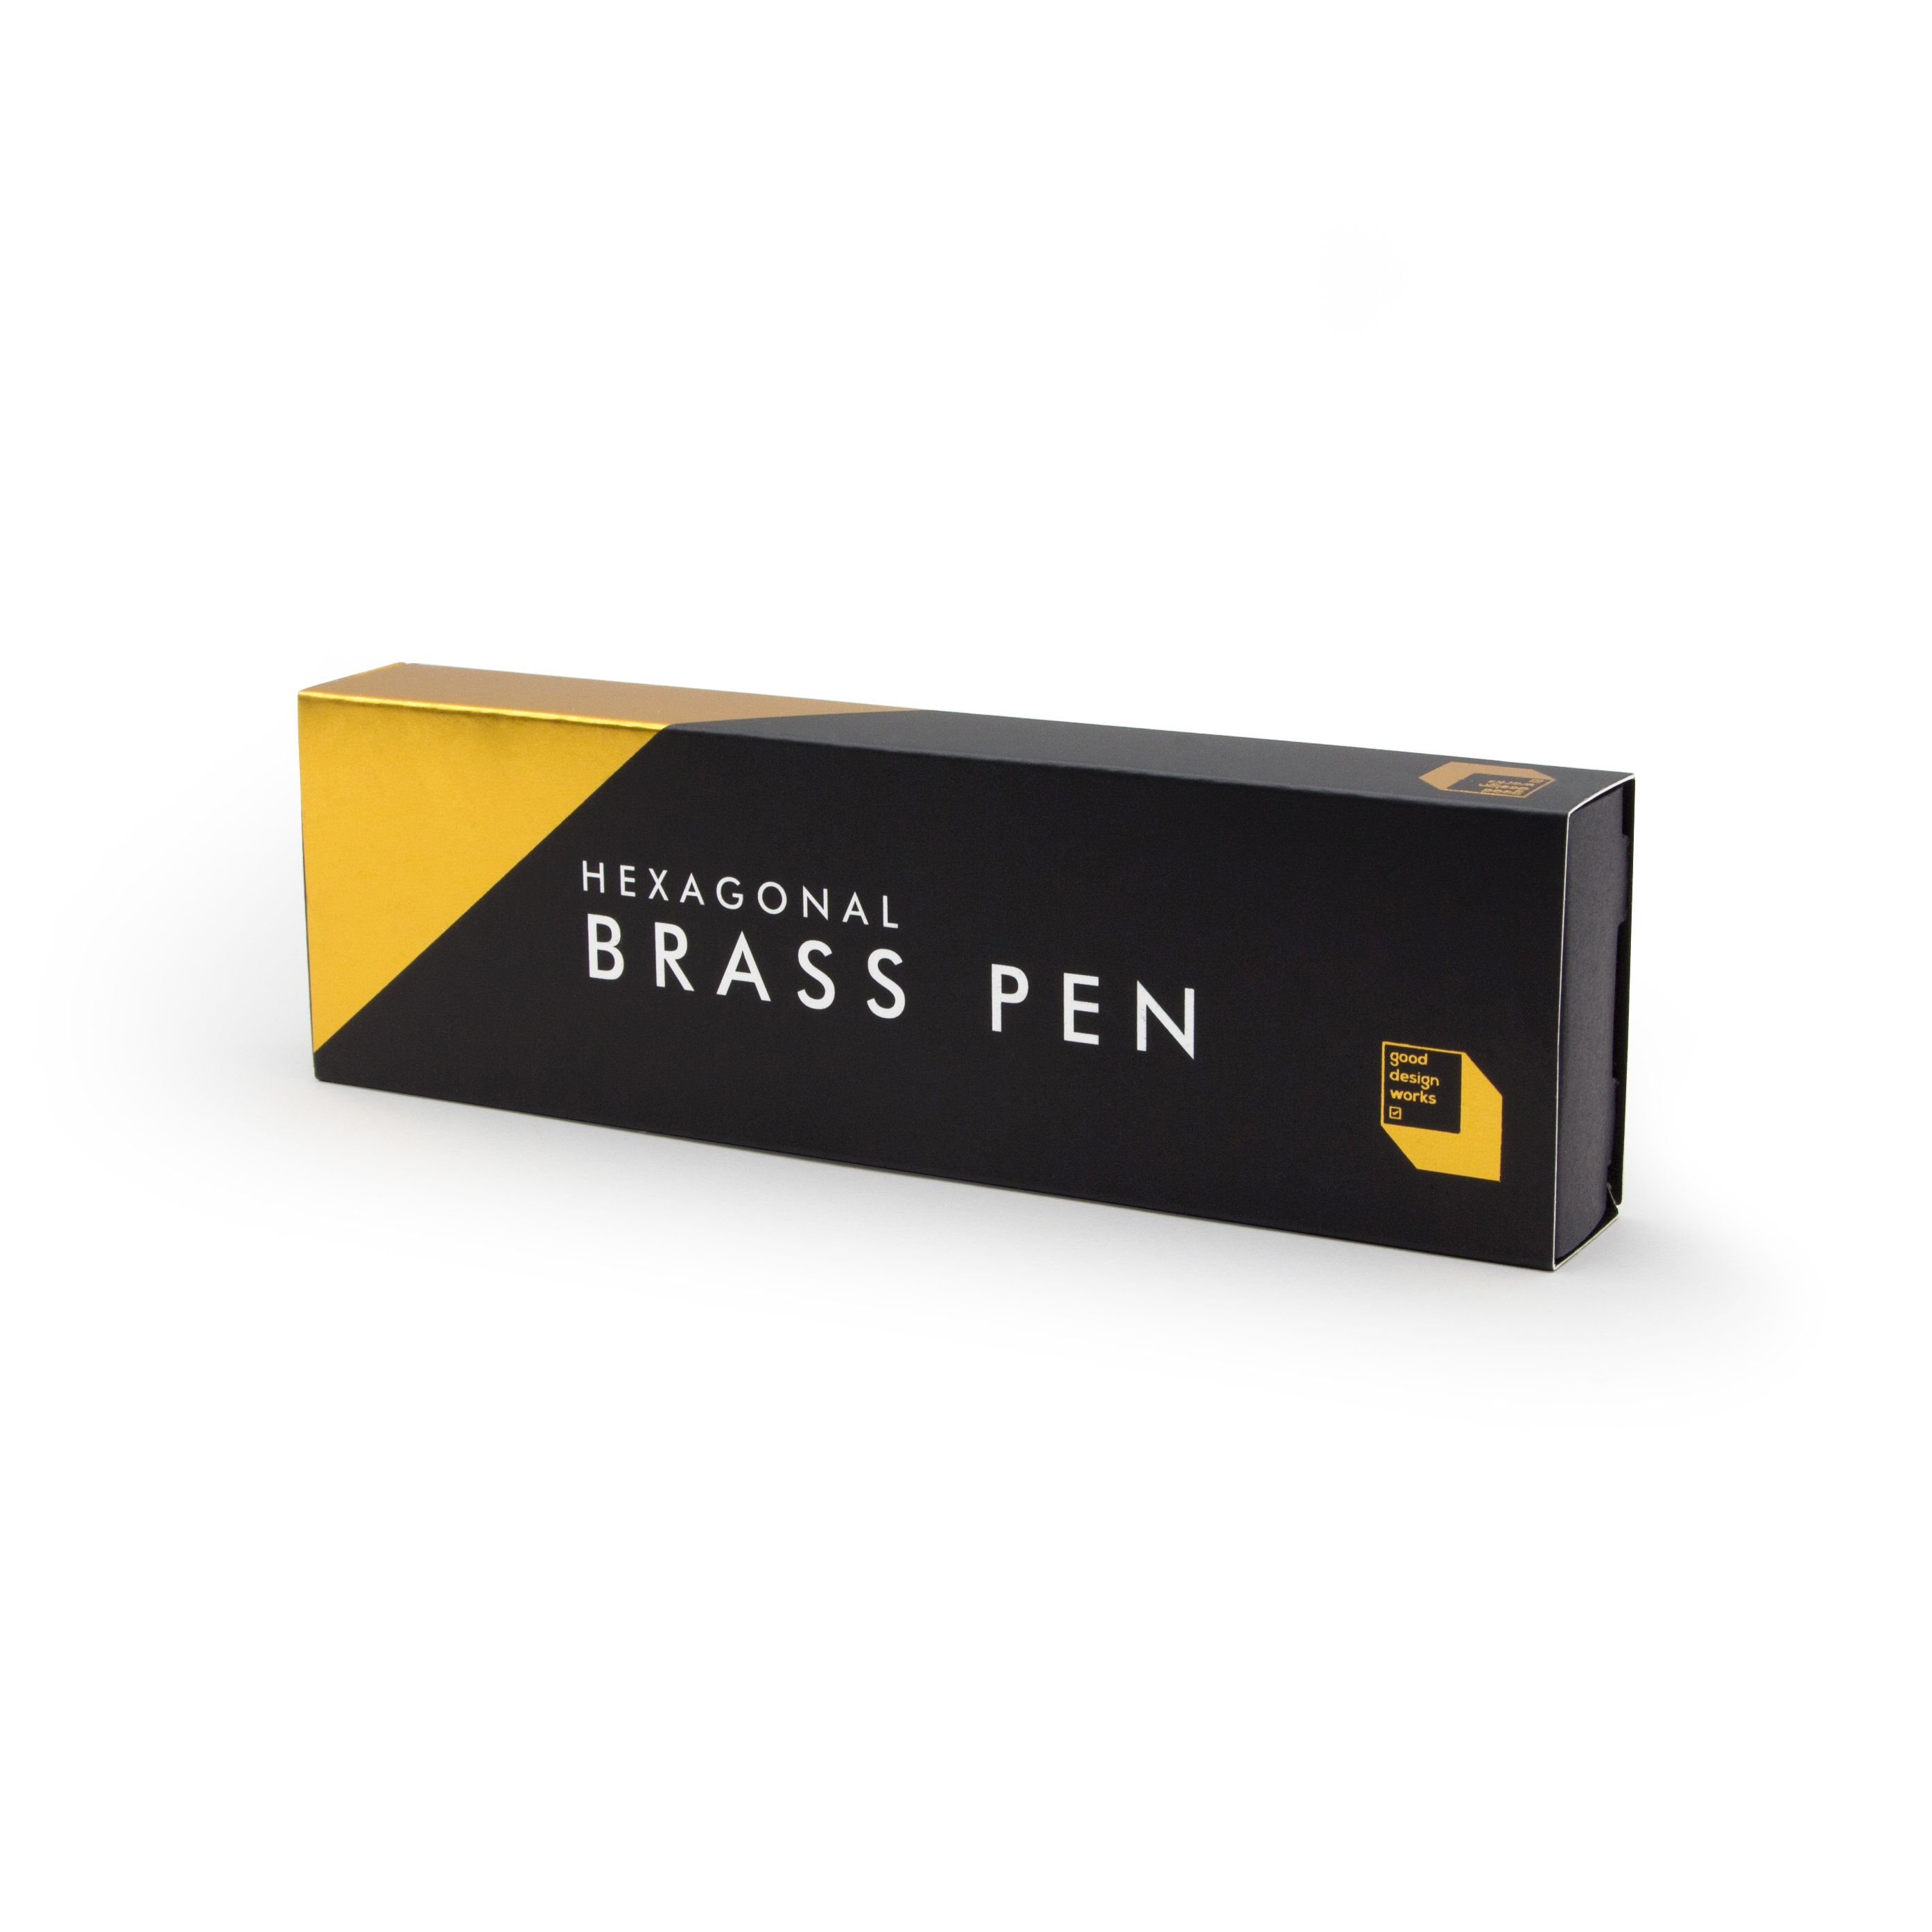 Gold Box for Brass Pen